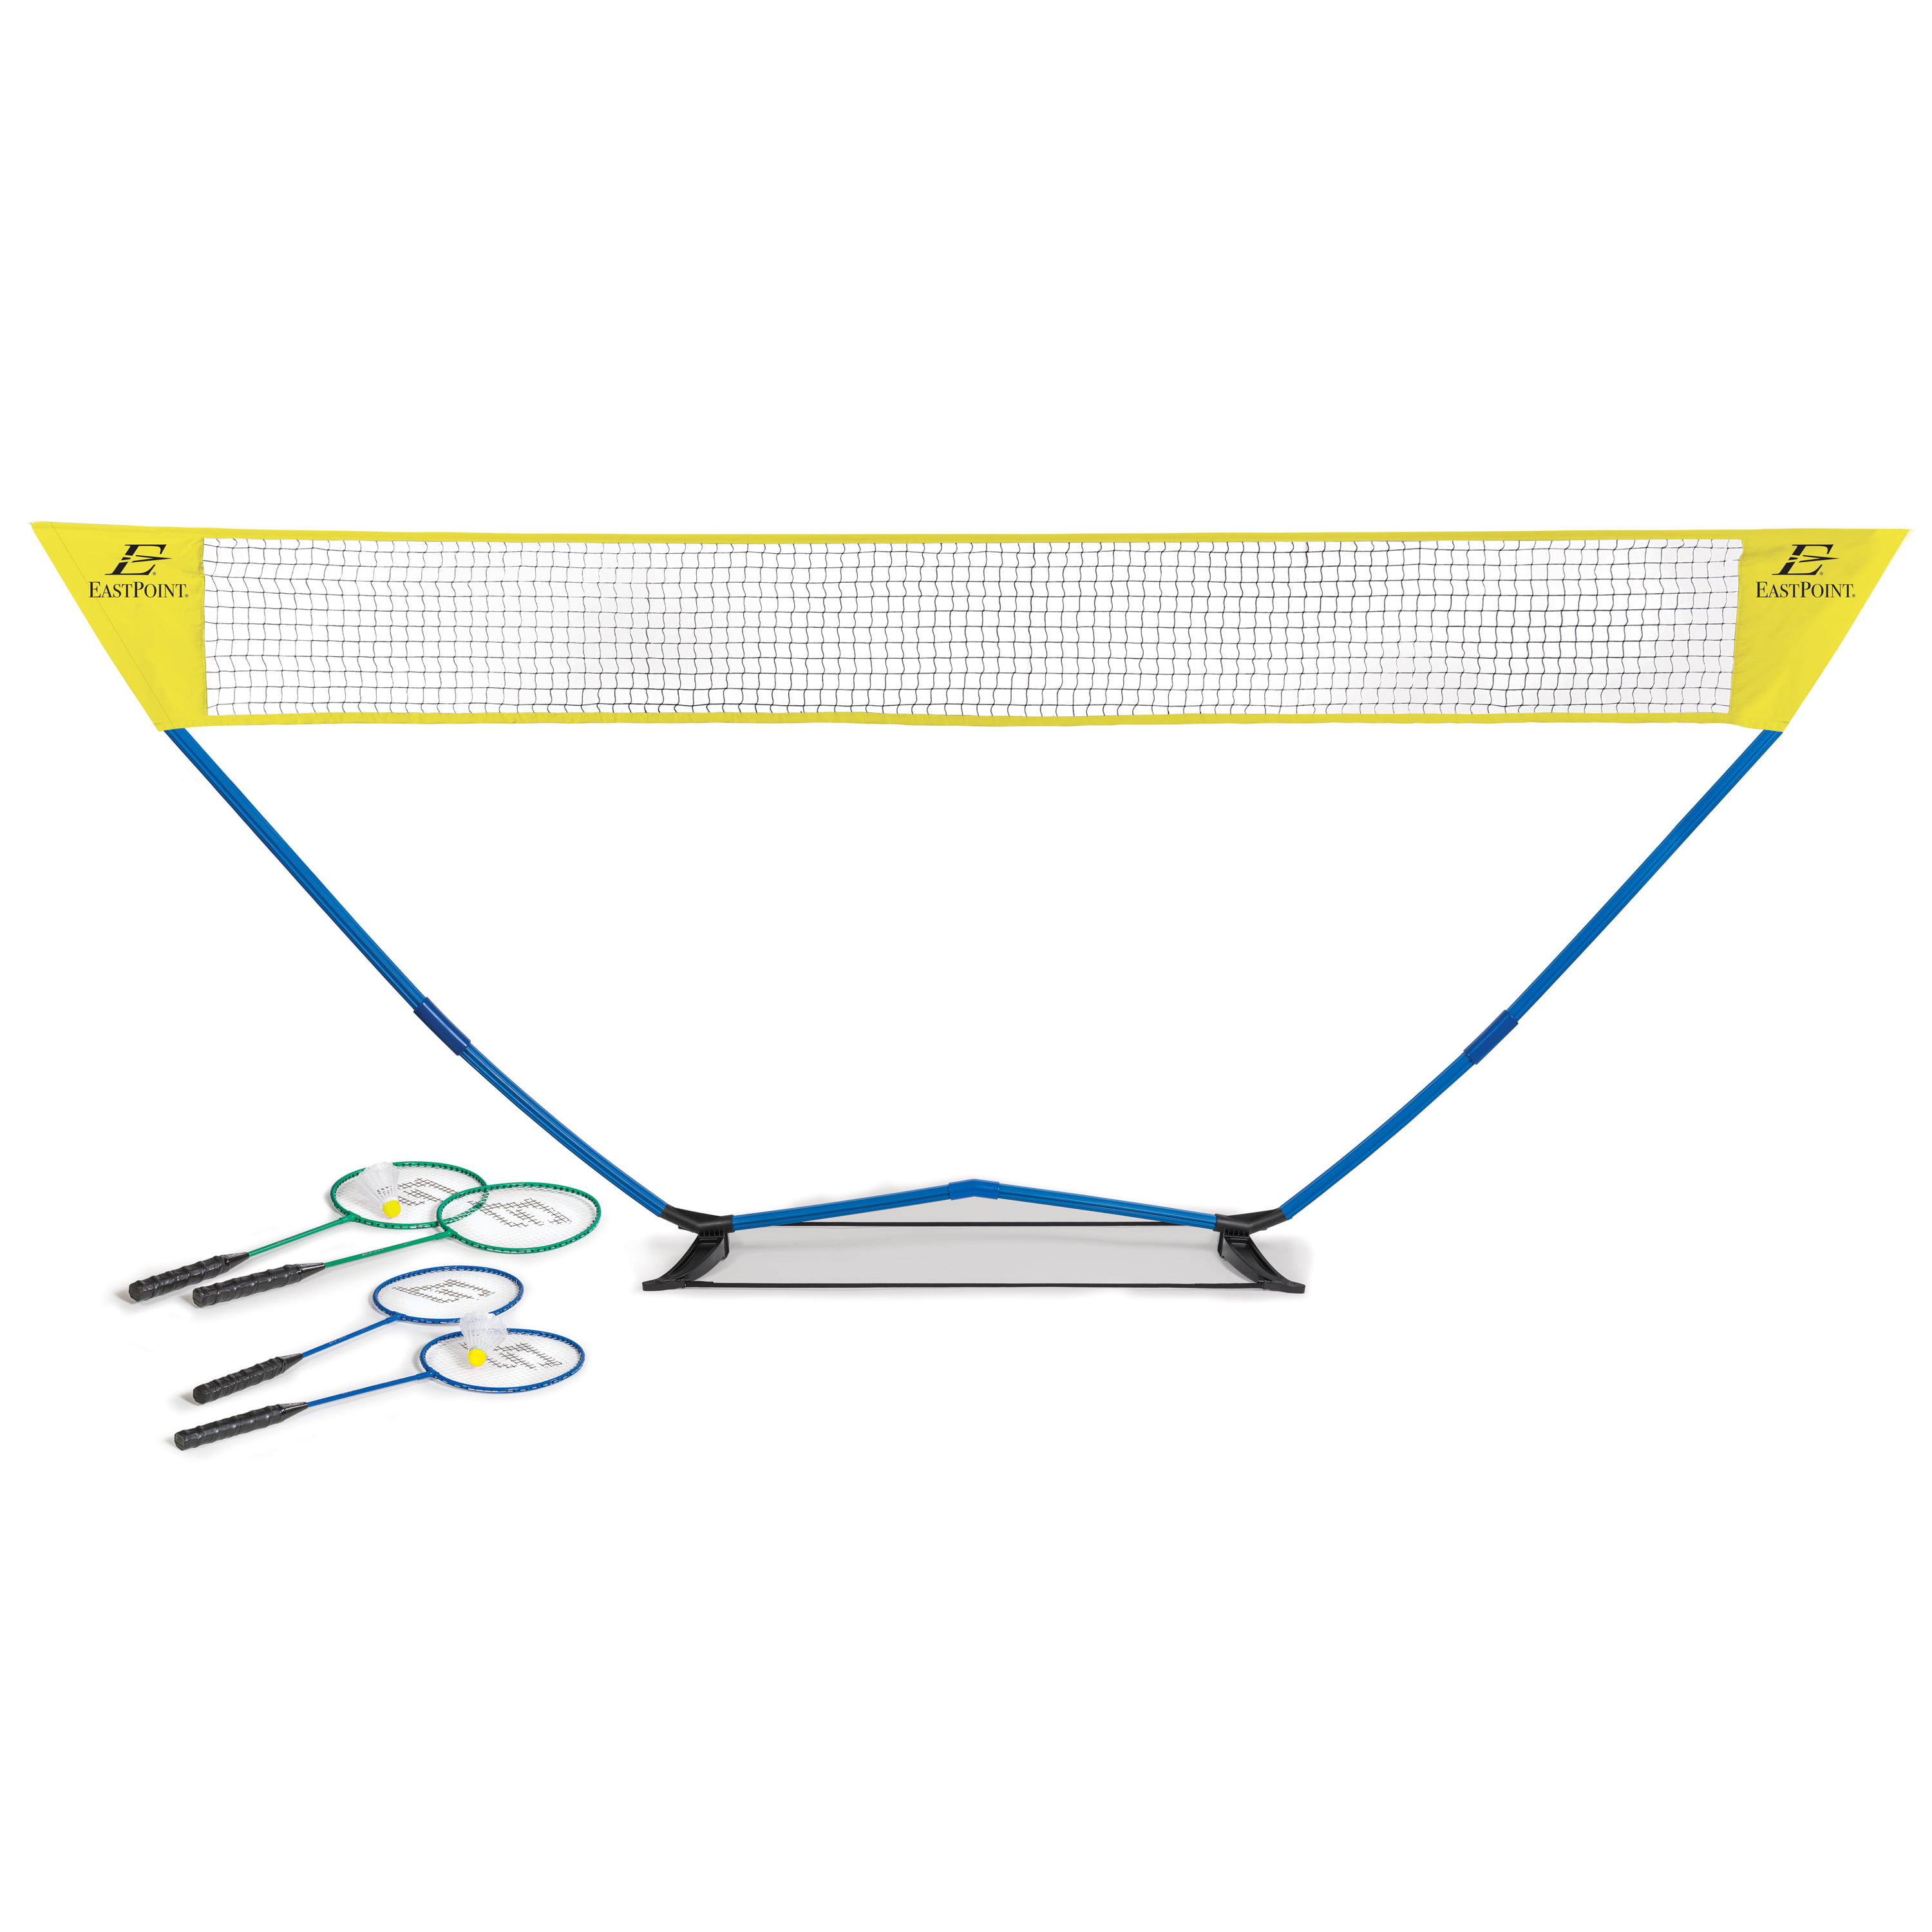 Size Waterproof Badminton Net 